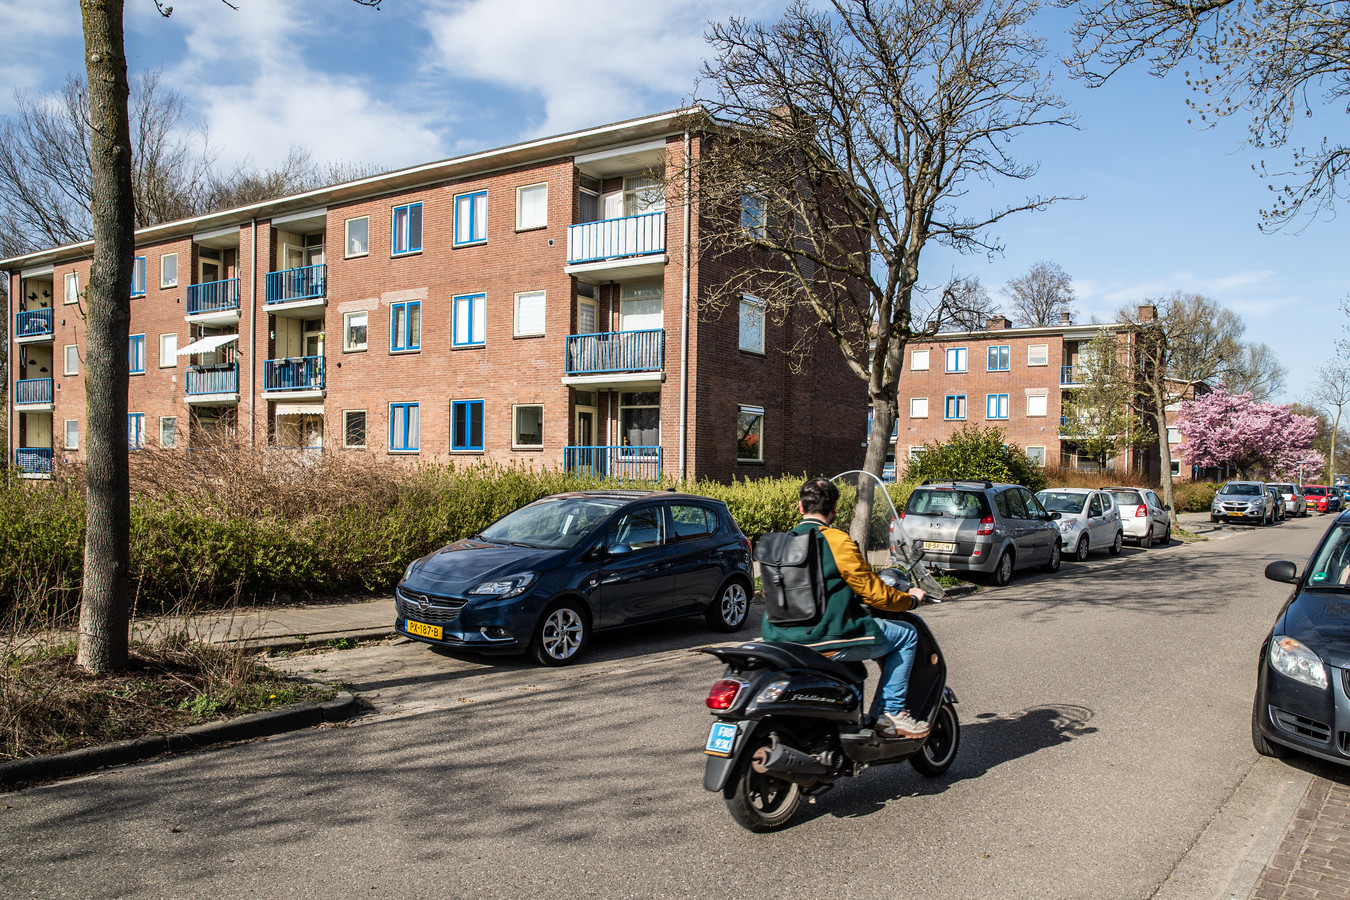 Deventenaren in goedkope flats wijken voor duurdere appartementen: ‘Dit